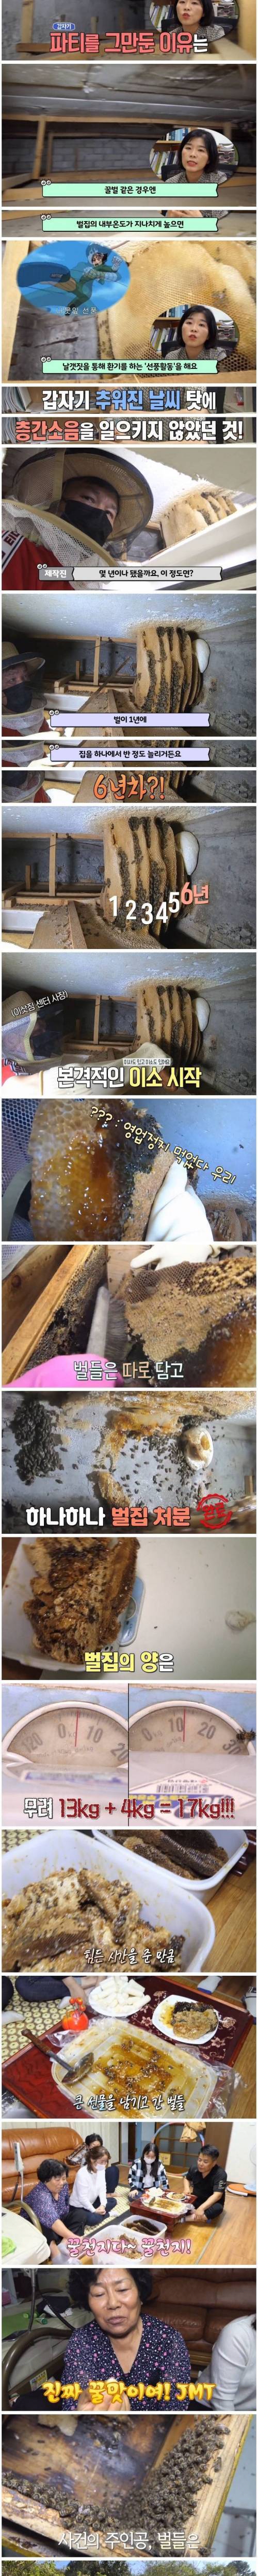 [스압] 꿀벌 사체가 매일 수백마리 발견되는 가정집.jpg